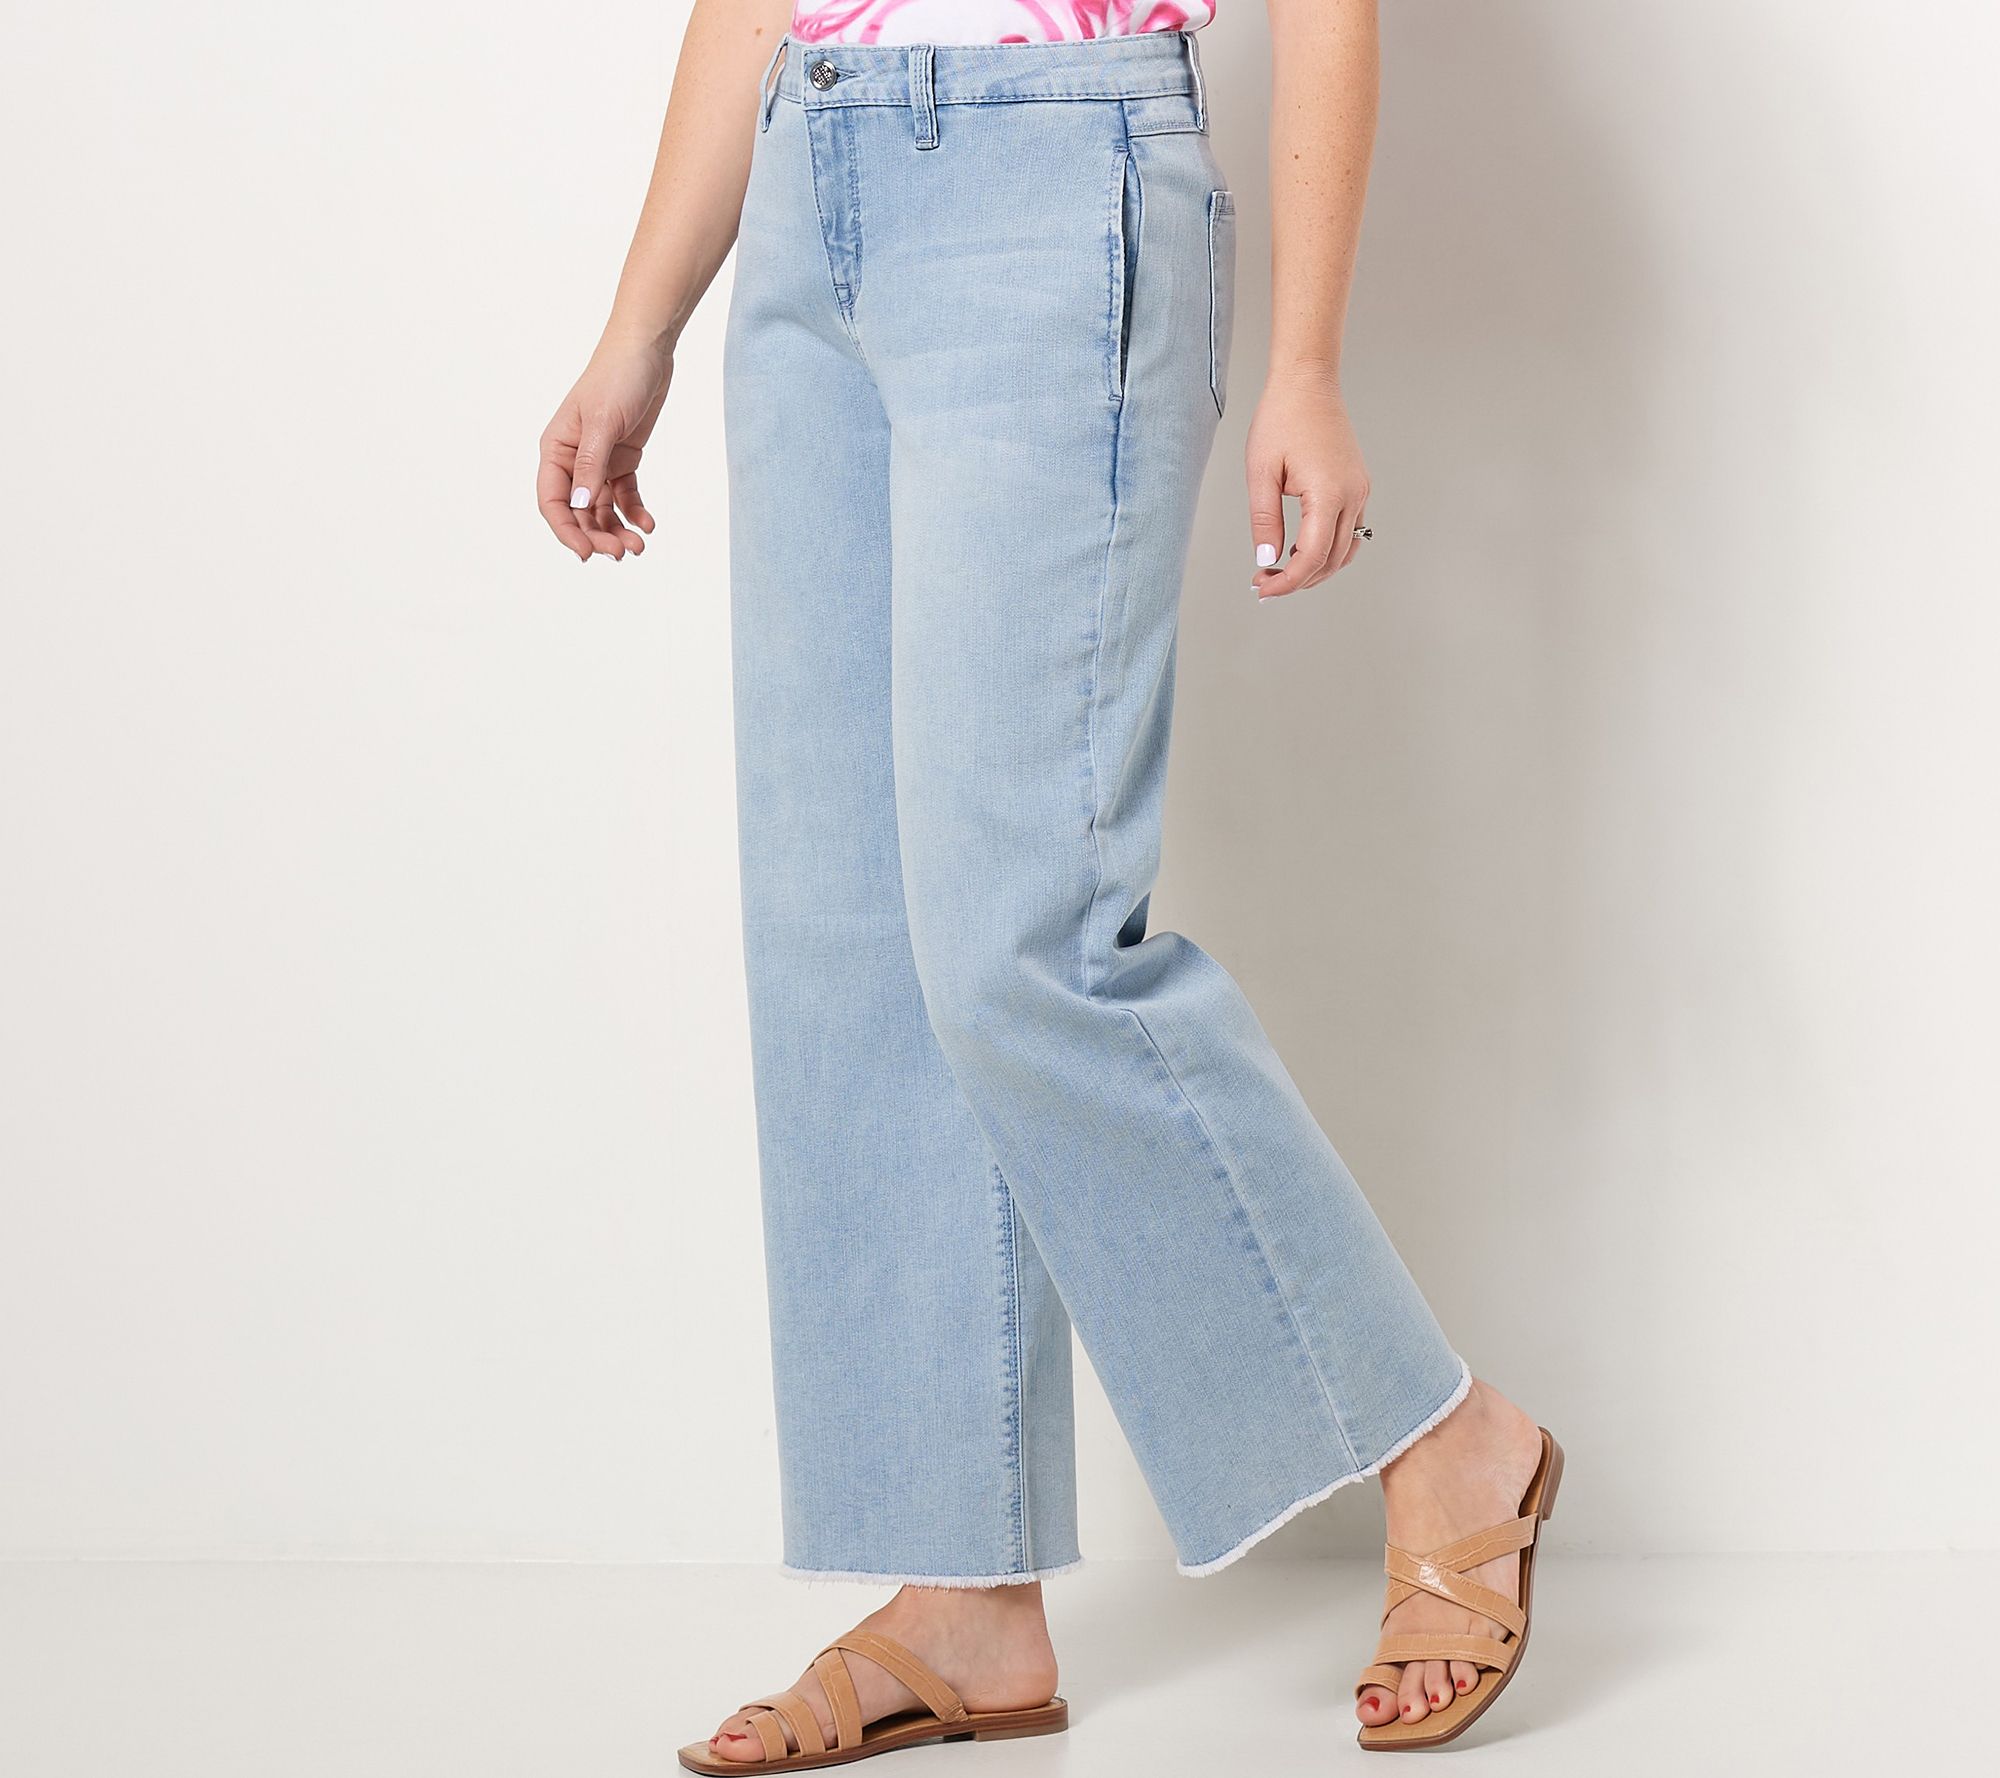 Laurie Felt Petite Daisy Denim Wide-Leg Jeans - QVC.com